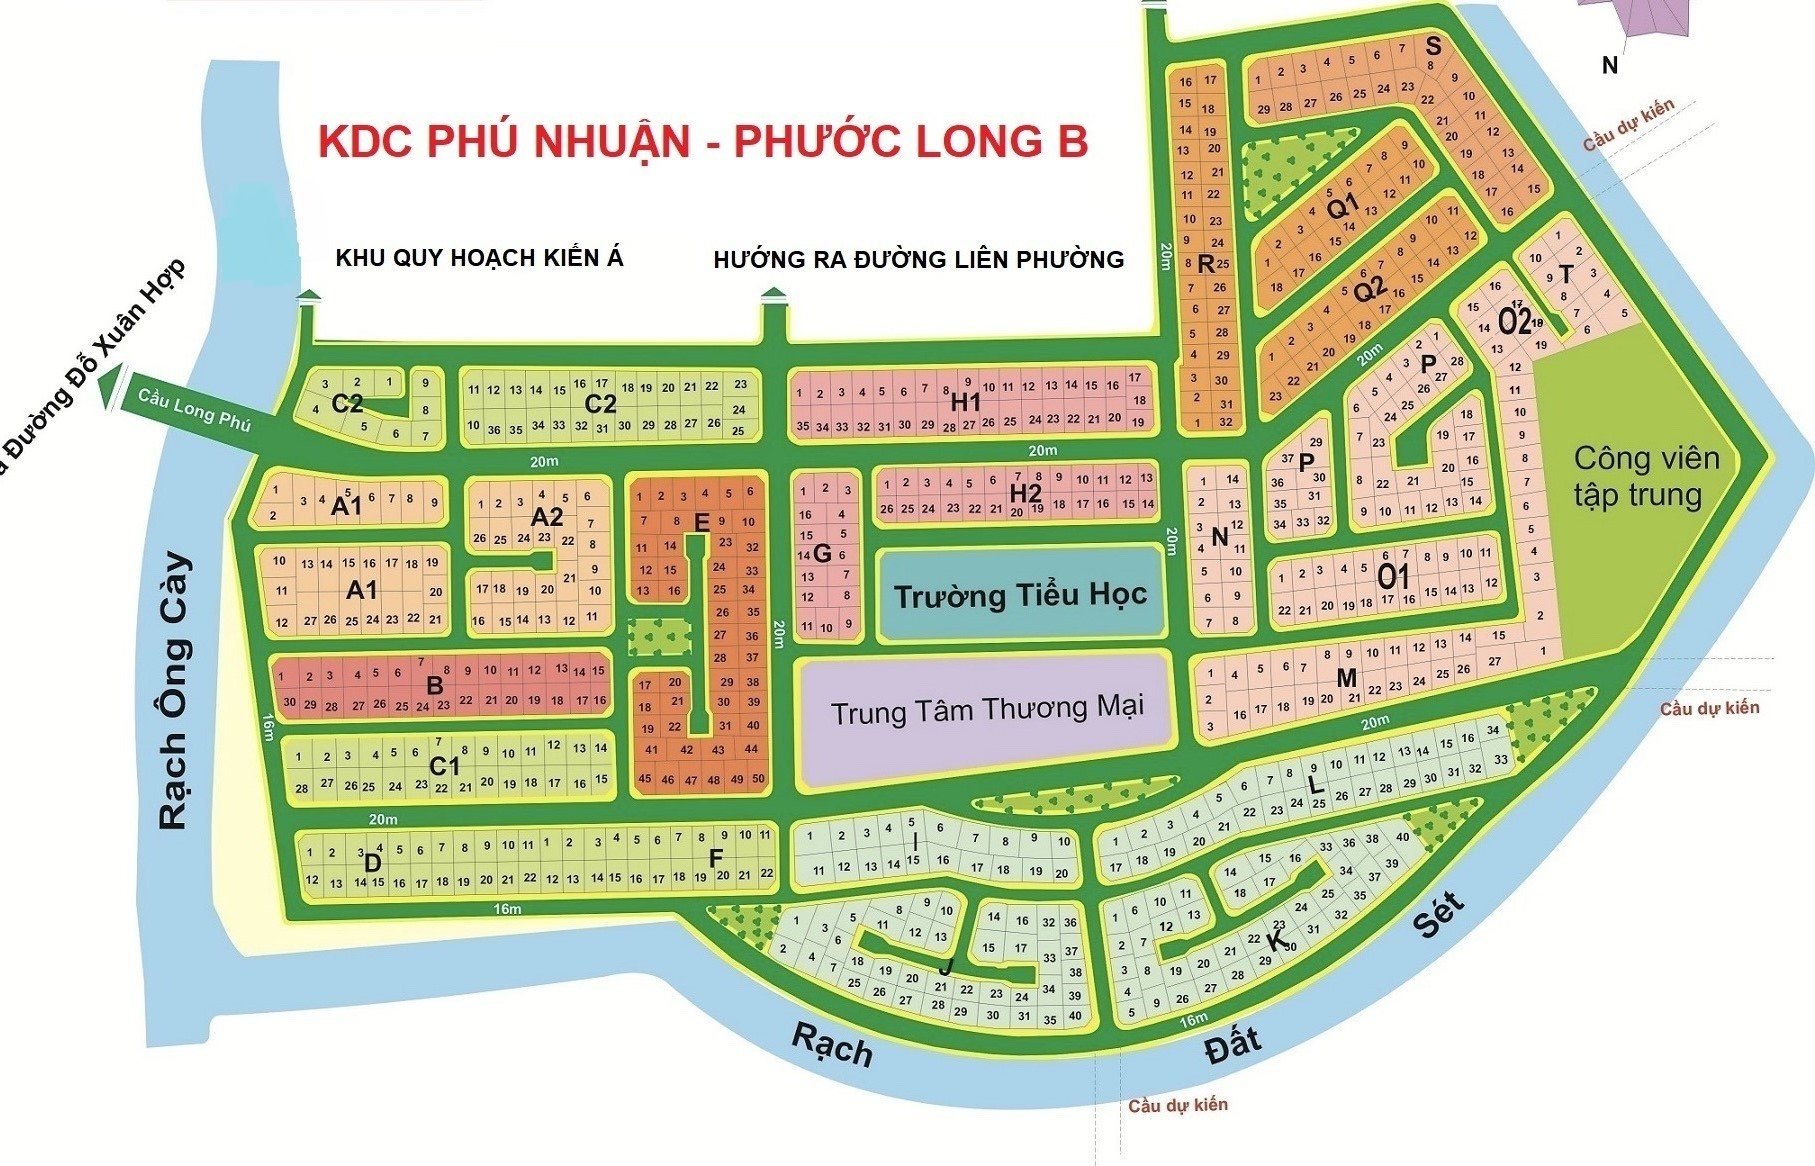 Bán đất giá tốt, sổ đỏ KDC Phú Nhuận, PLB, quận 9 DT 290-415m2, đường 12m và 16m 2